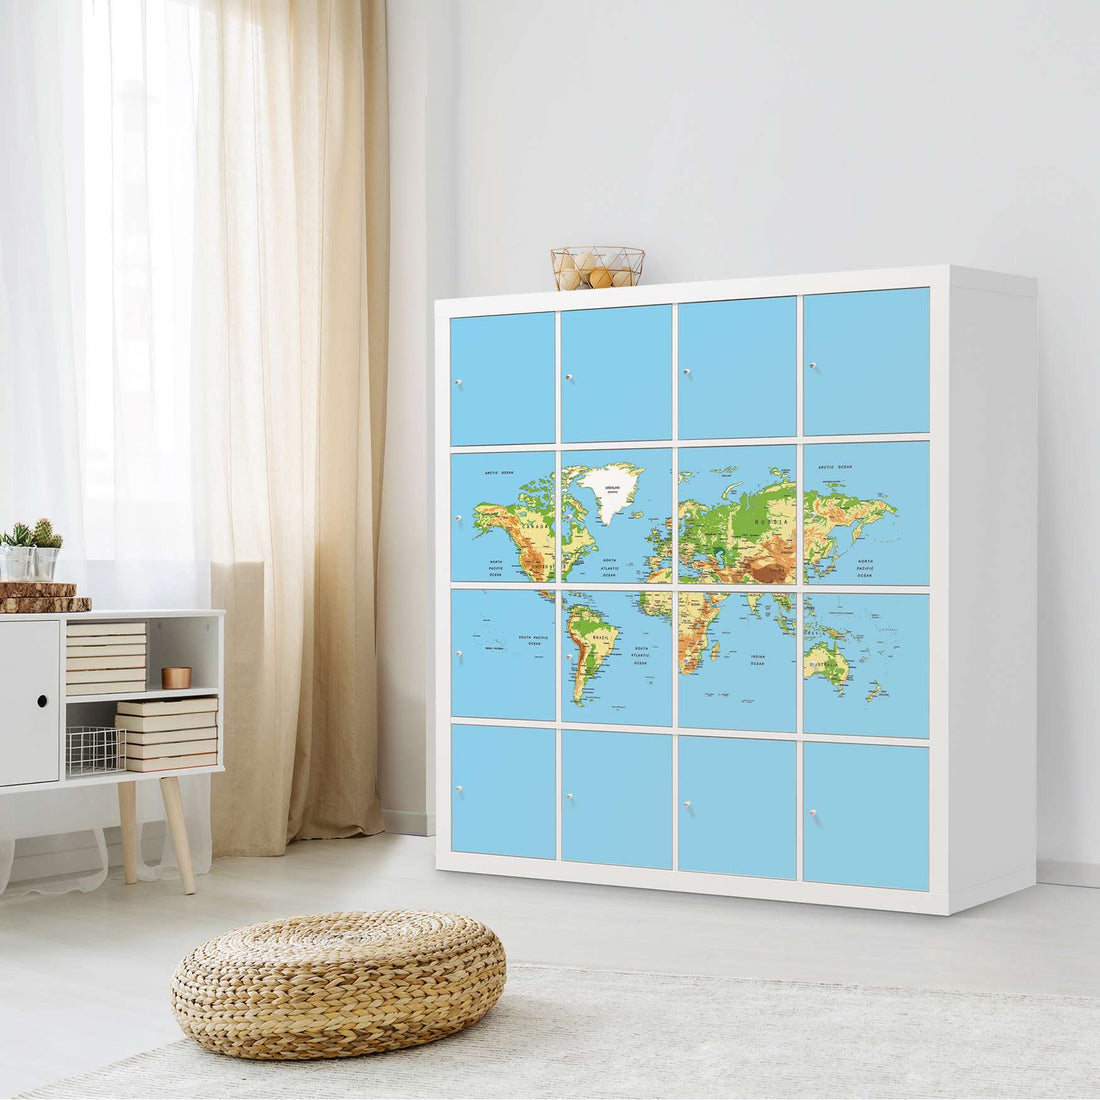 Selbstklebende Folie Geografische Weltkarte - IKEA Expedit Regal 16 Türen - Wohnzimmer